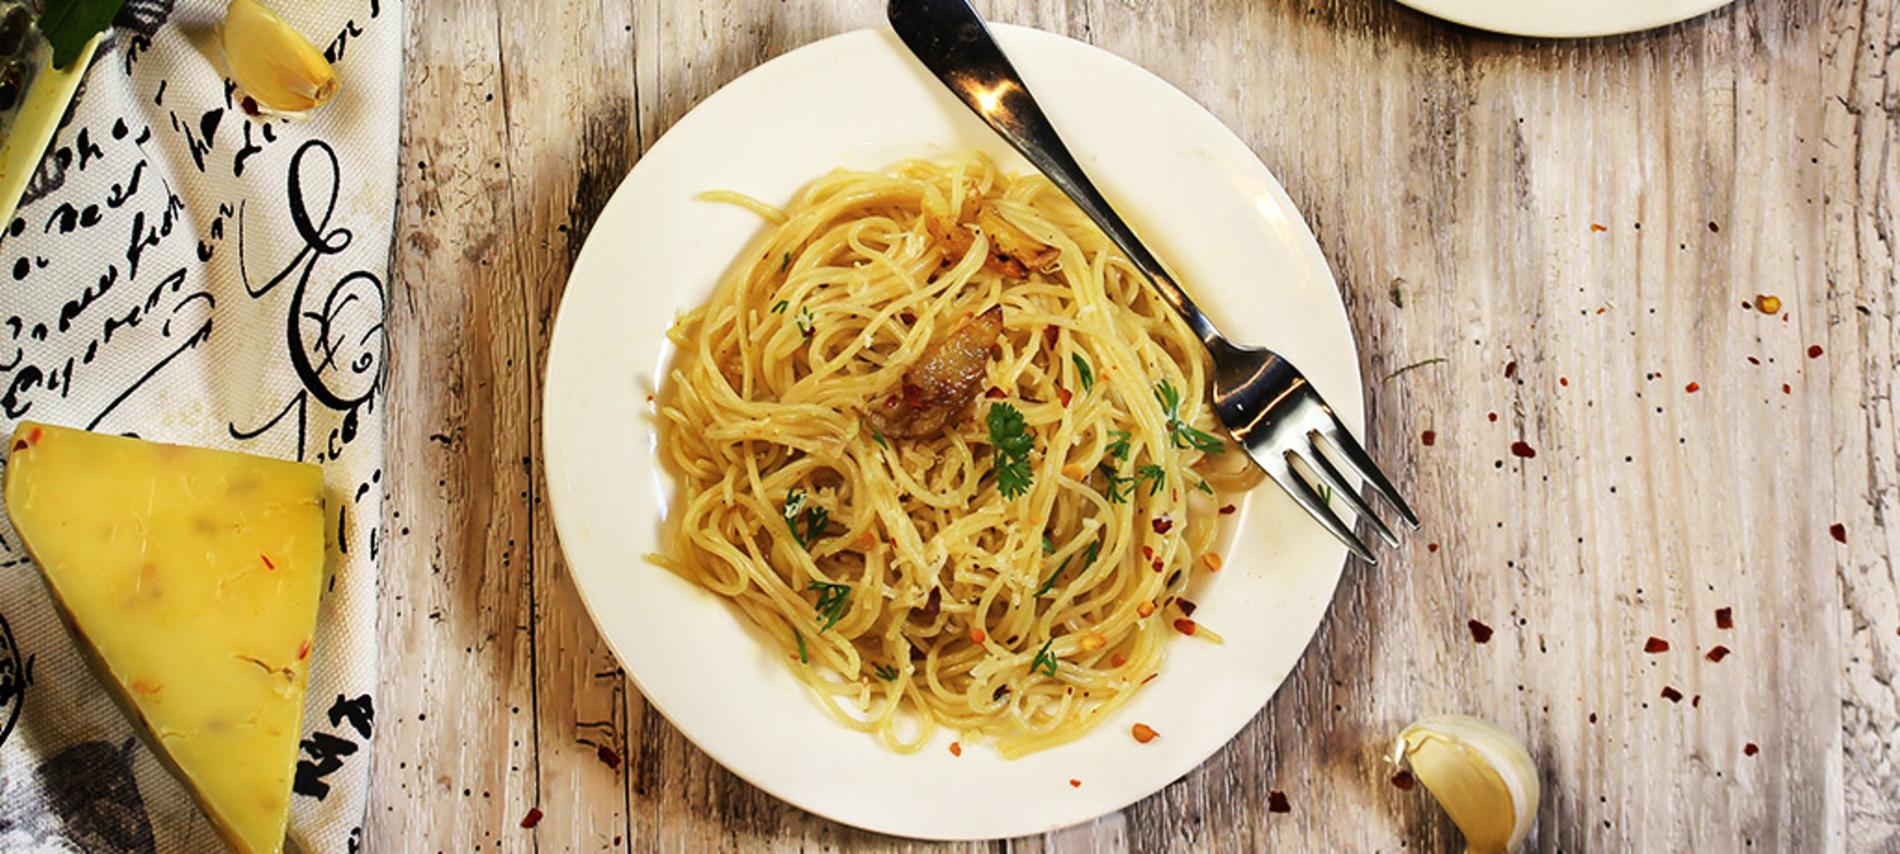 Receta de Spaghetti aglio, olio e pepperoncino